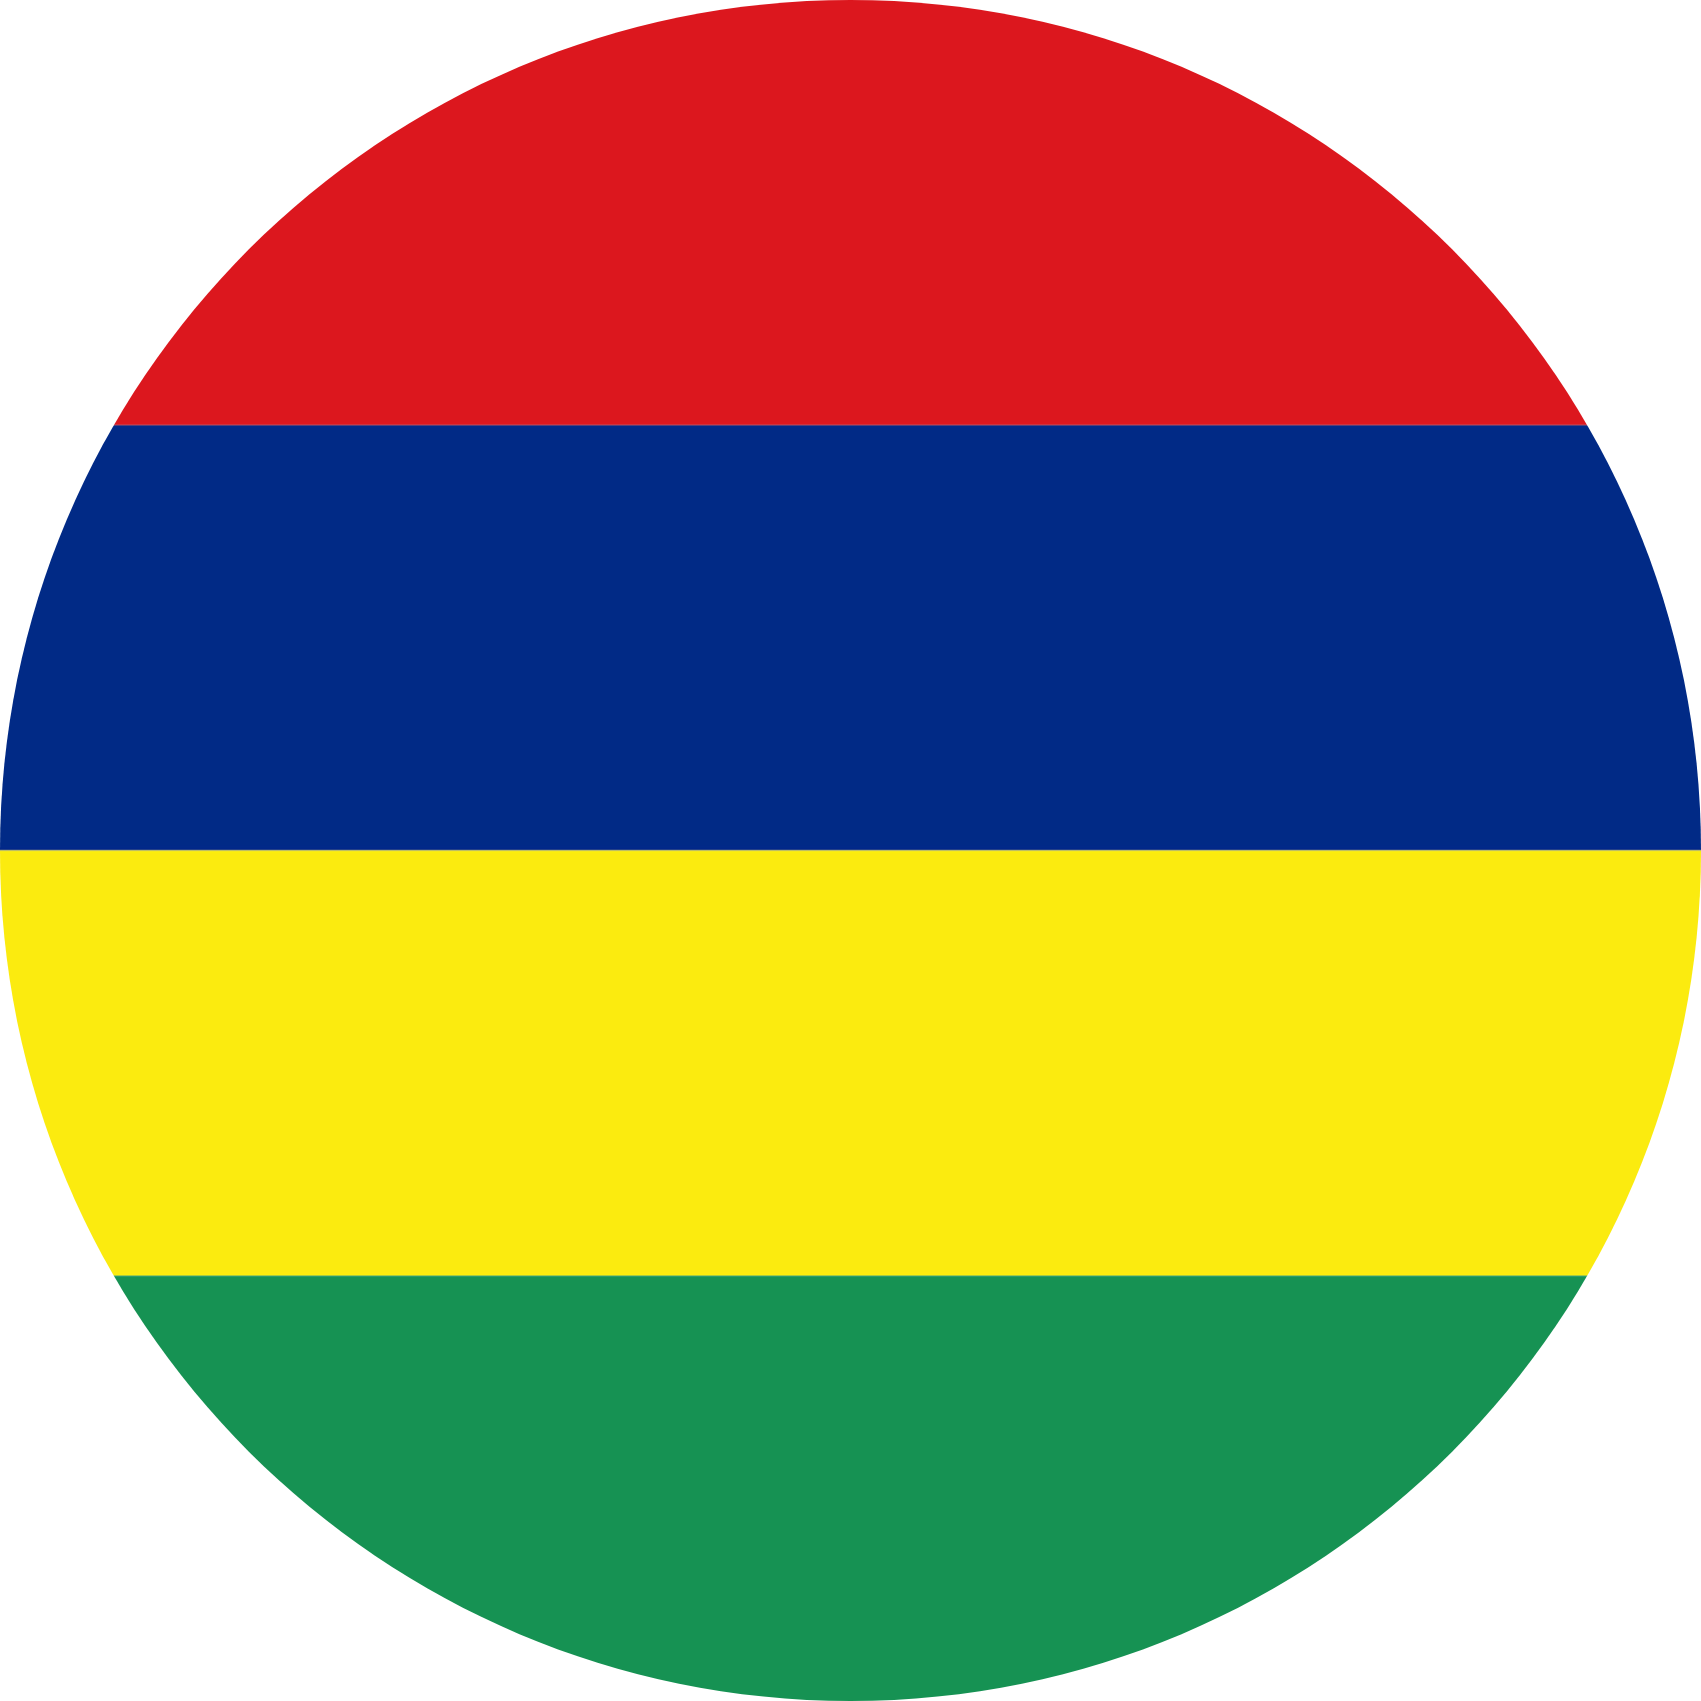 Mauritius flag in a circle